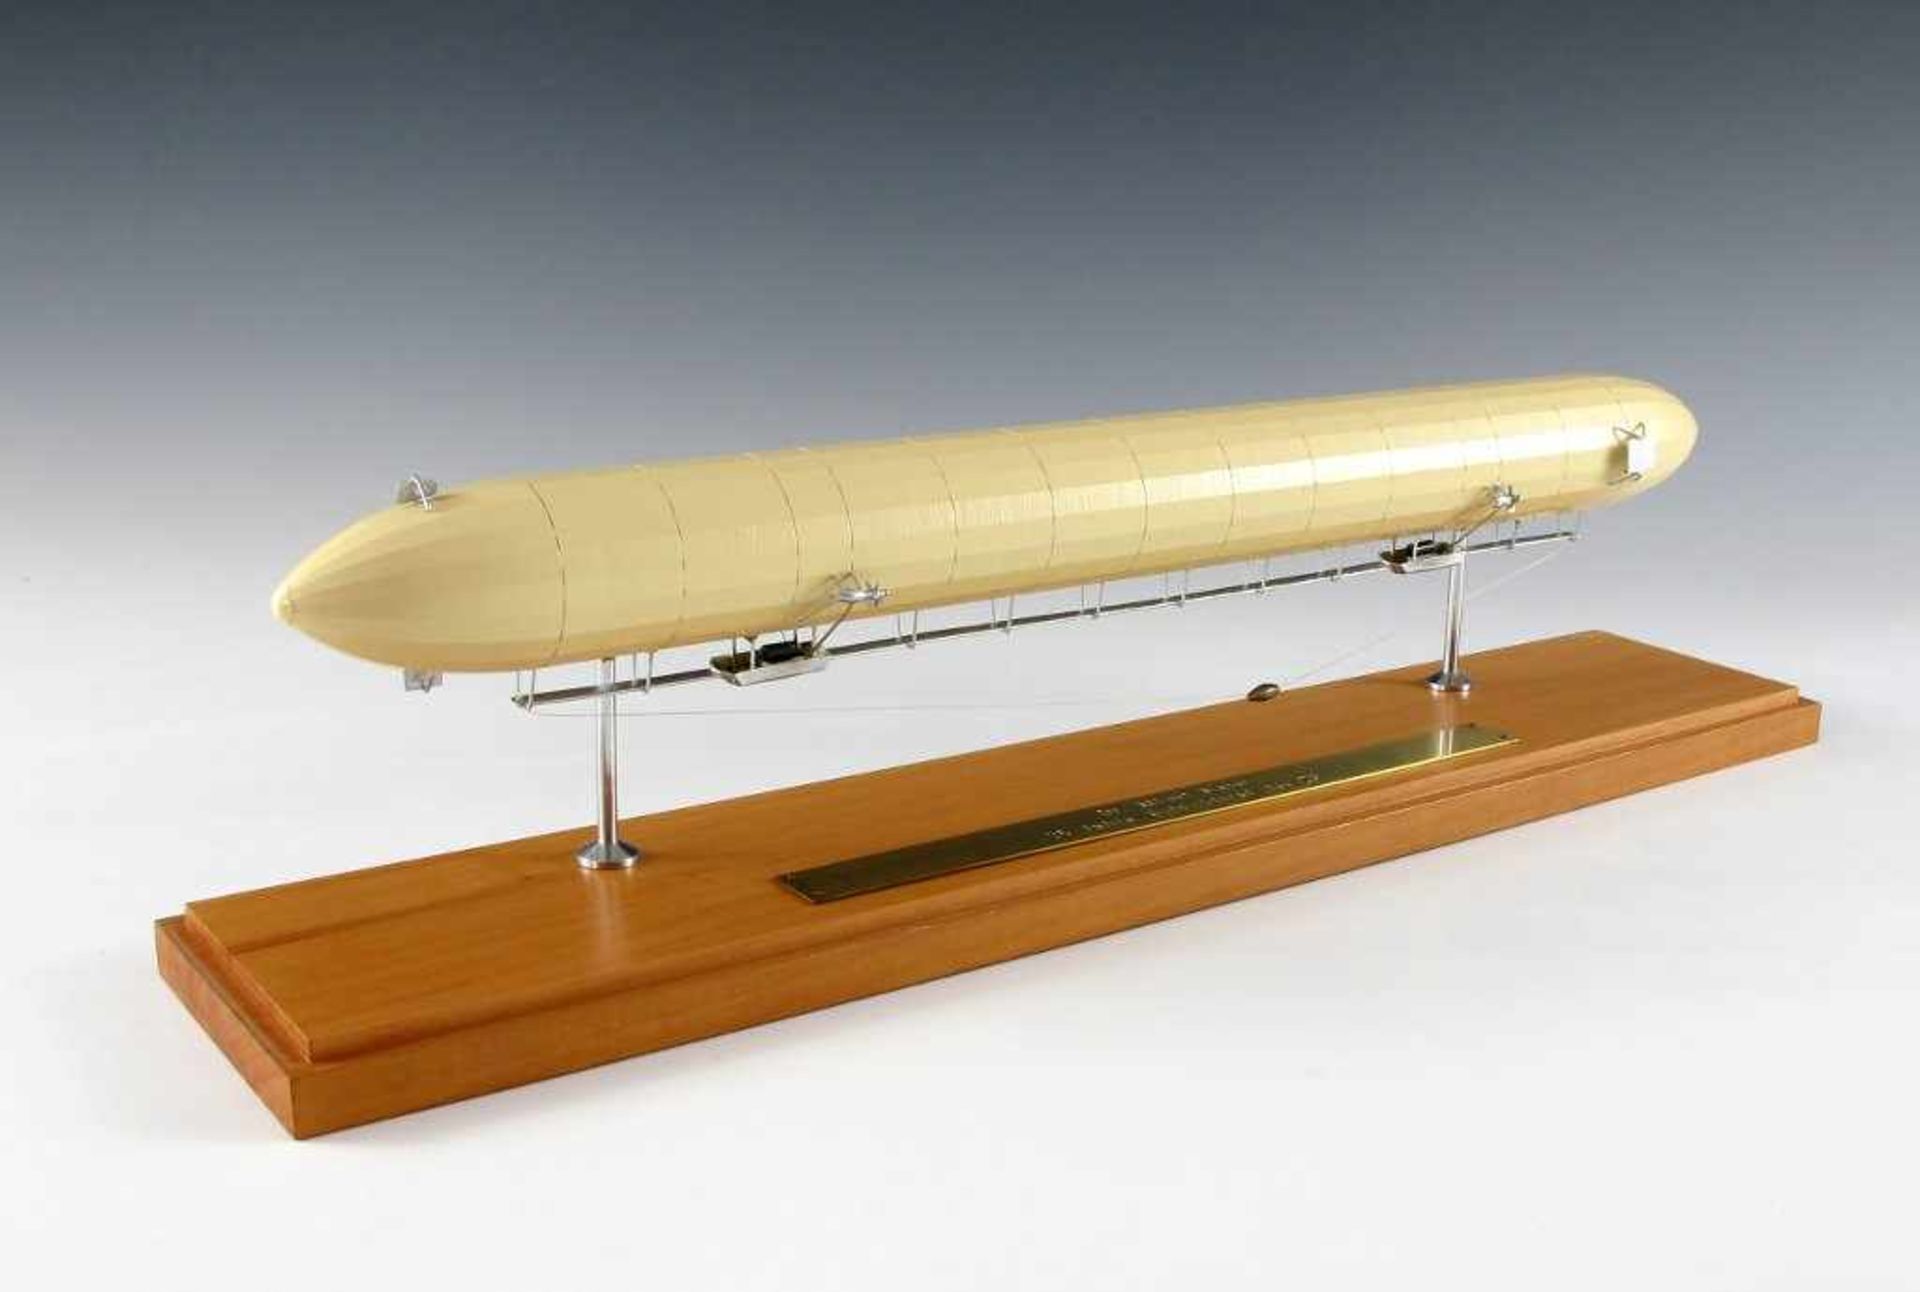 Modell eines Zeppelin-Luftschiffes. L 46 cm. Provenienz Sammlung Dr. Albert Maier Friedrichshafen